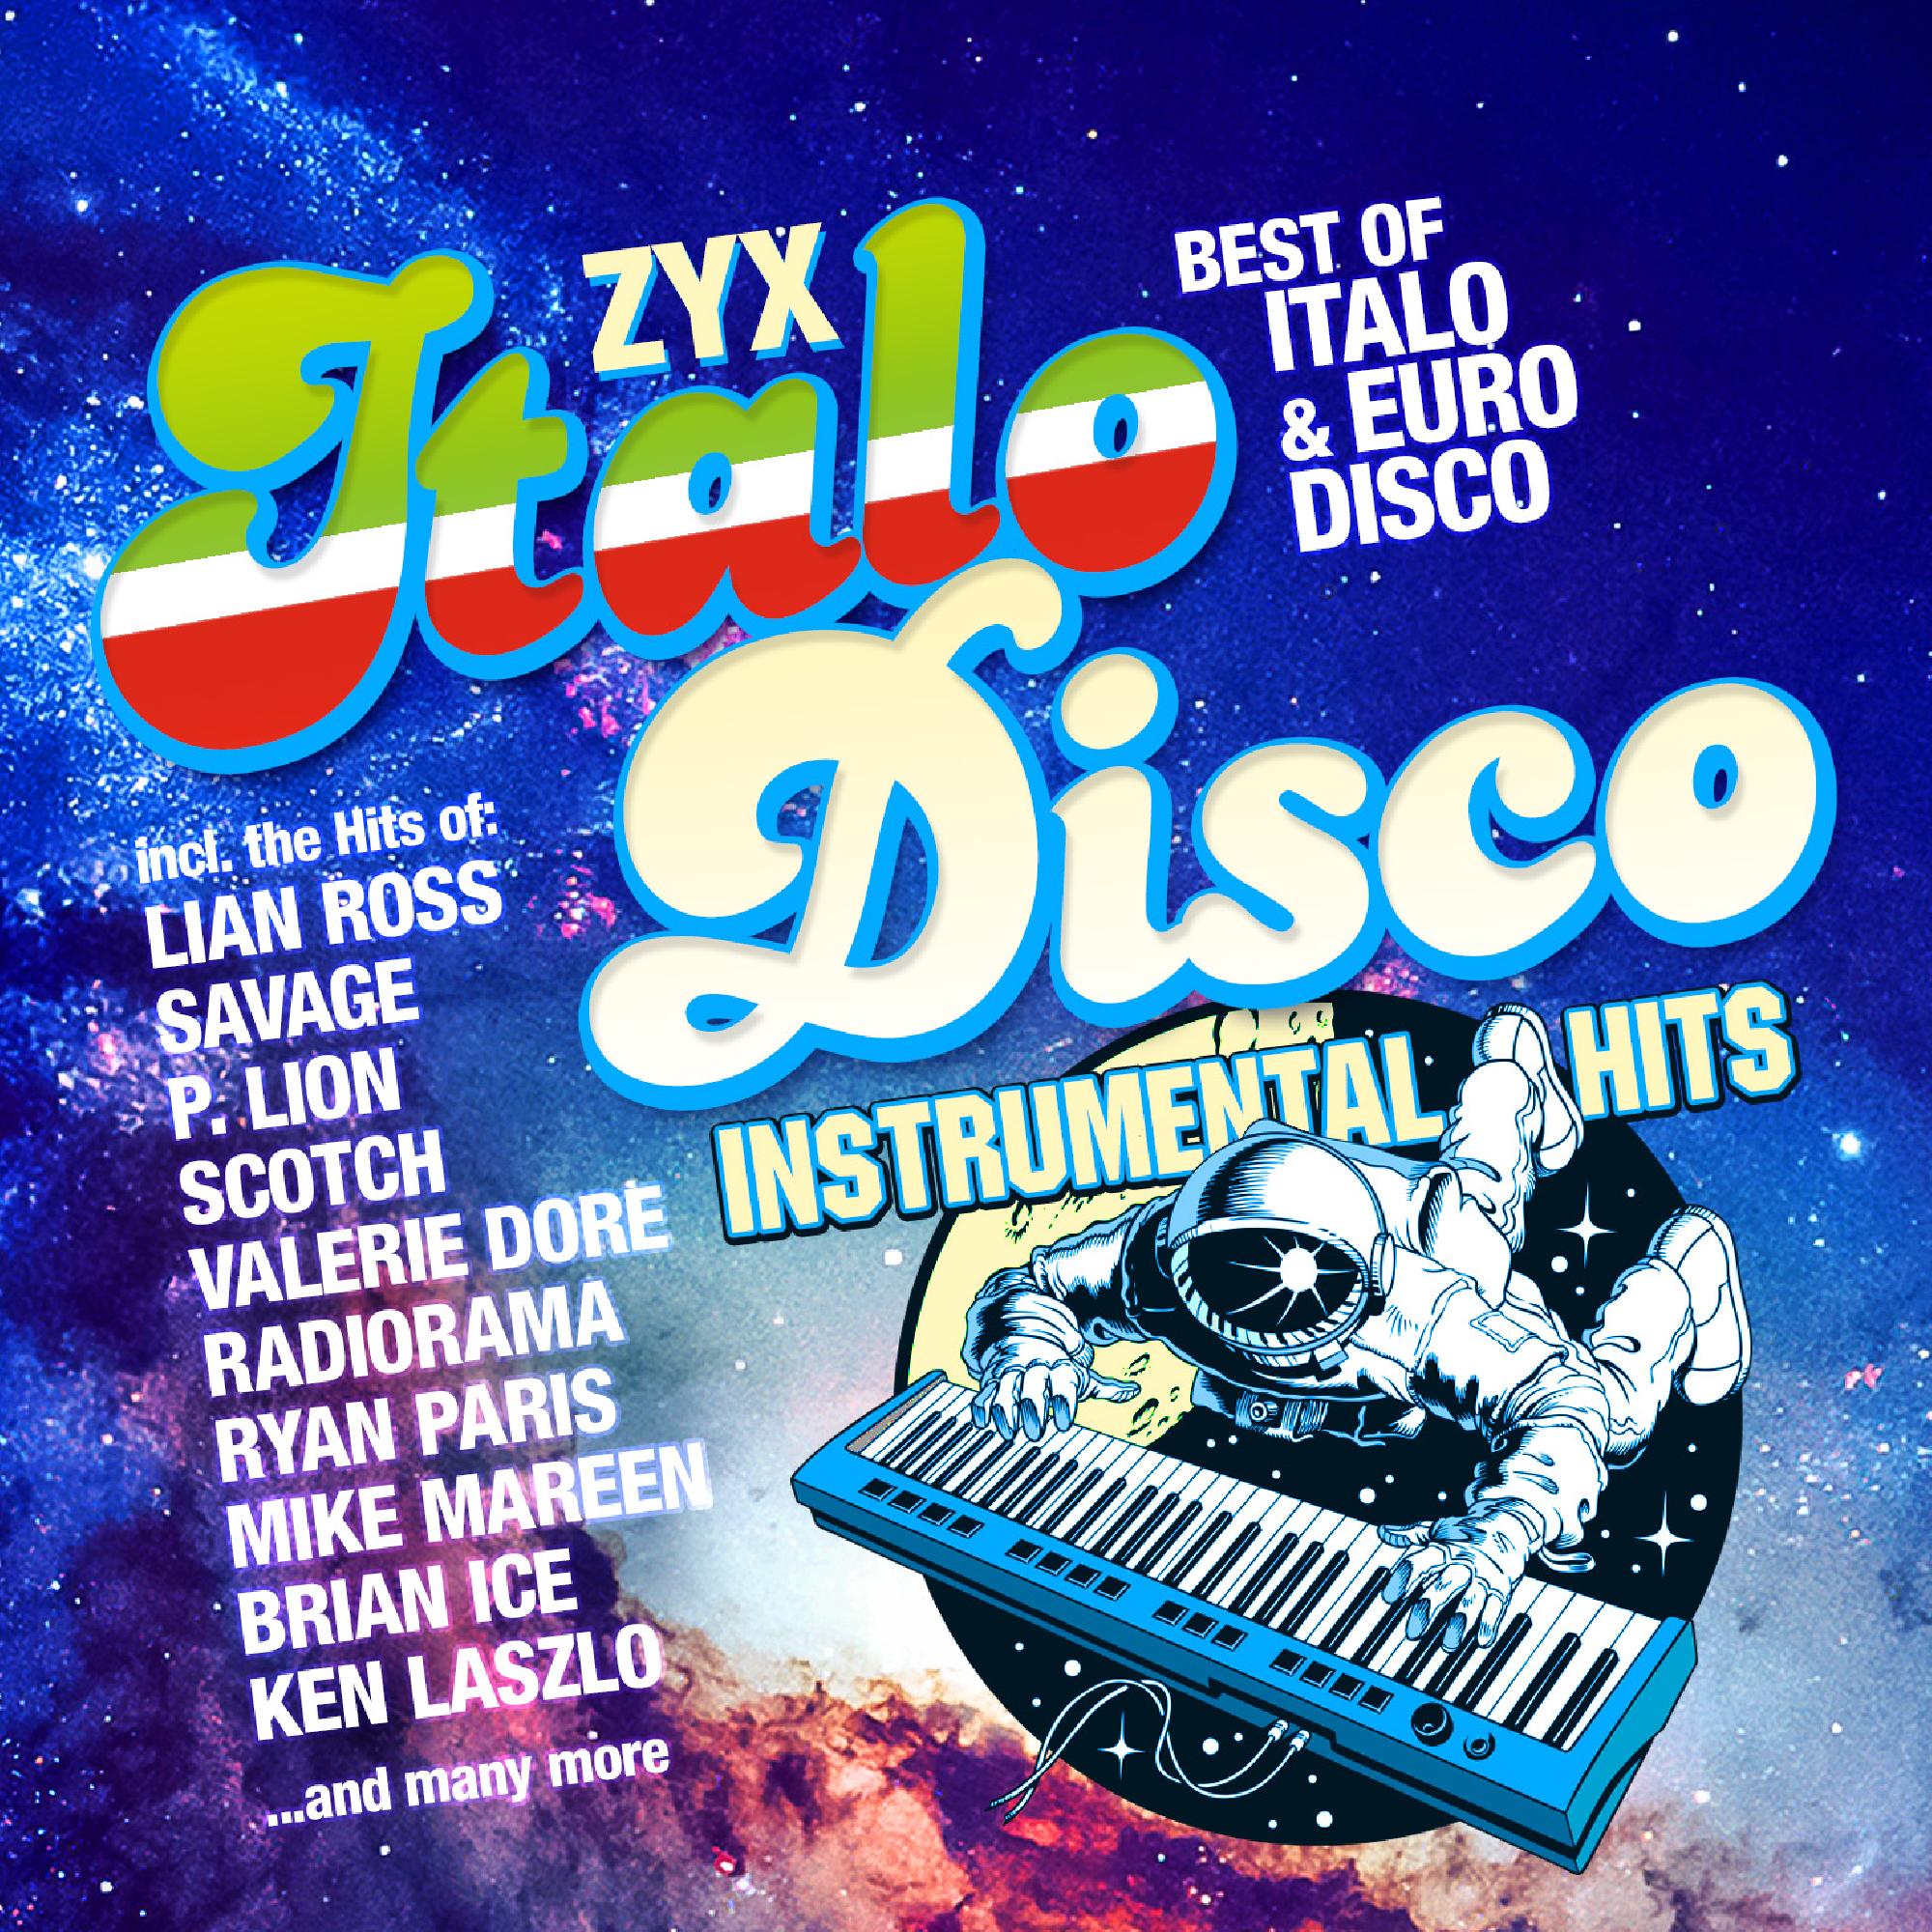 Альбом итало диско. Итало диско. Итало диско итало диско. ZYX Italo Disco Hits. Итало диско фото.